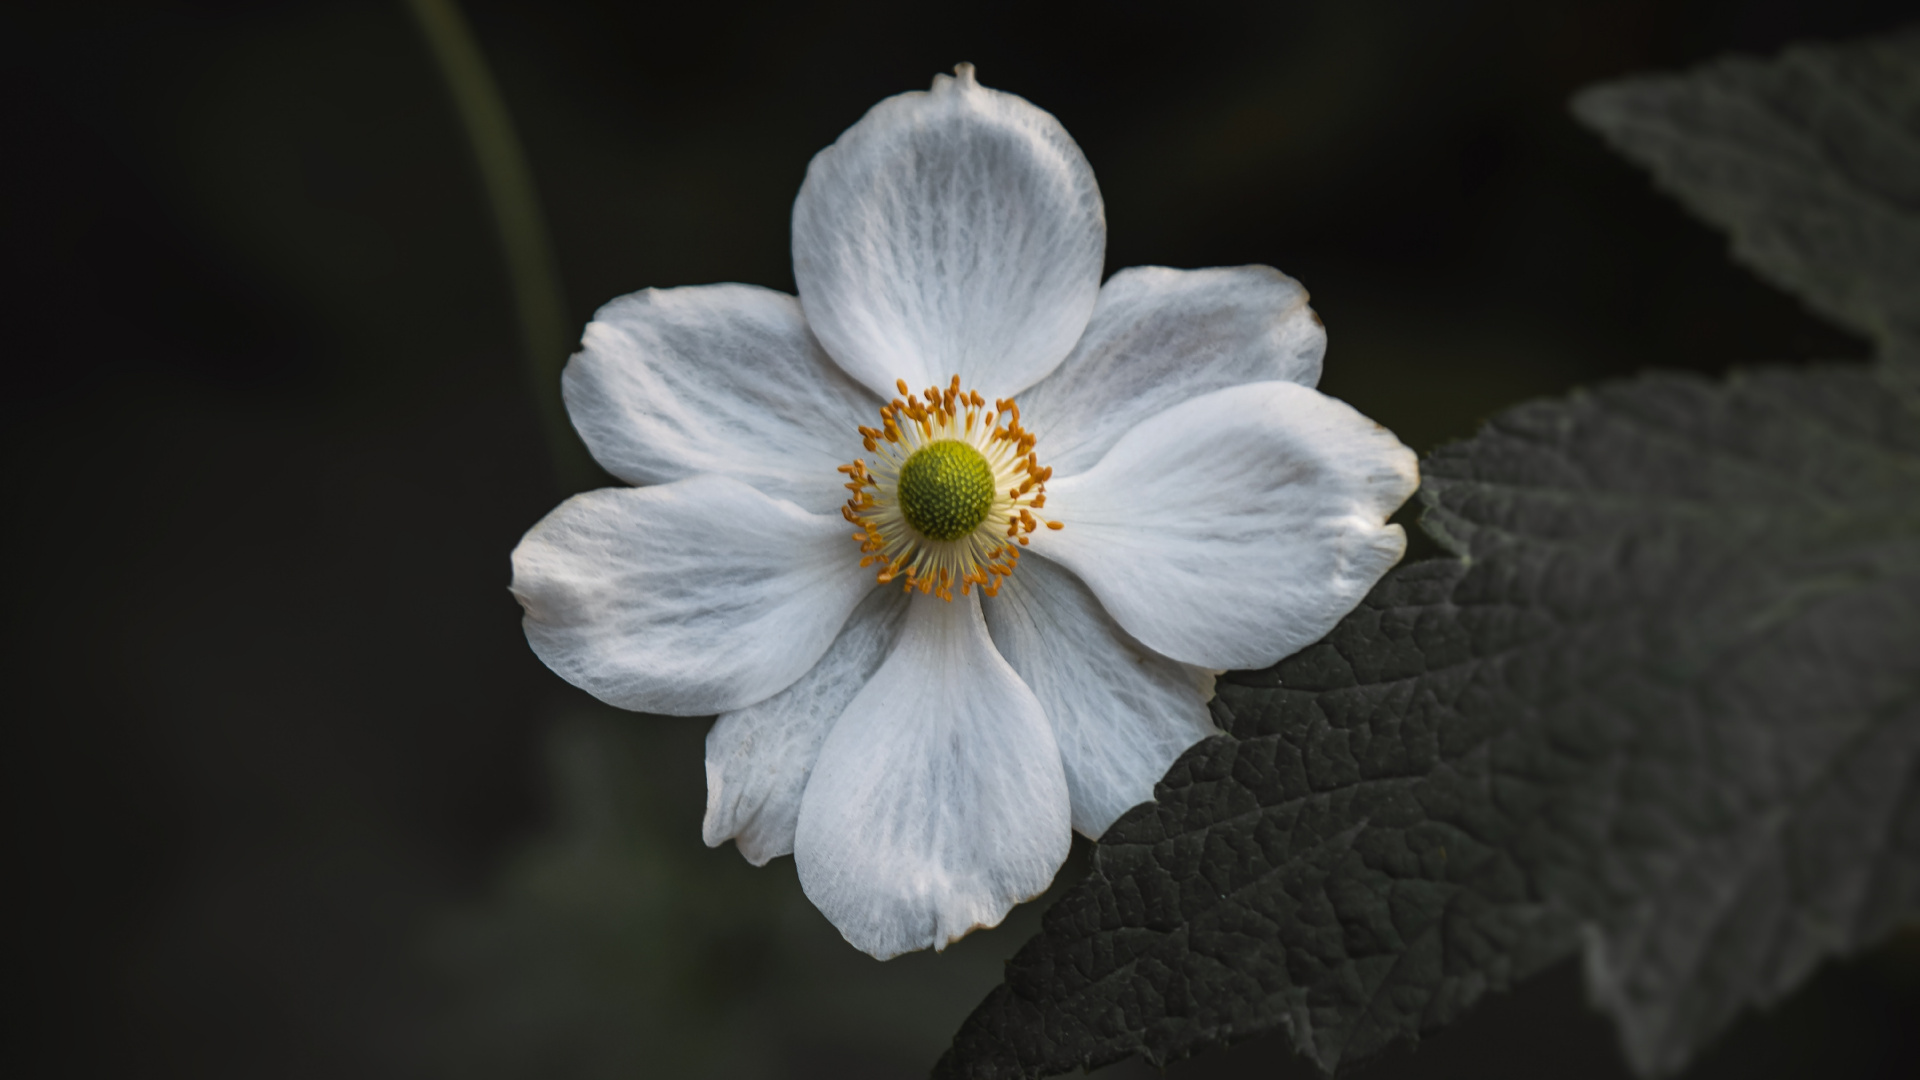 White Flower in Tilt Shift Lens. Wallpaper in 1920x1080 Resolution